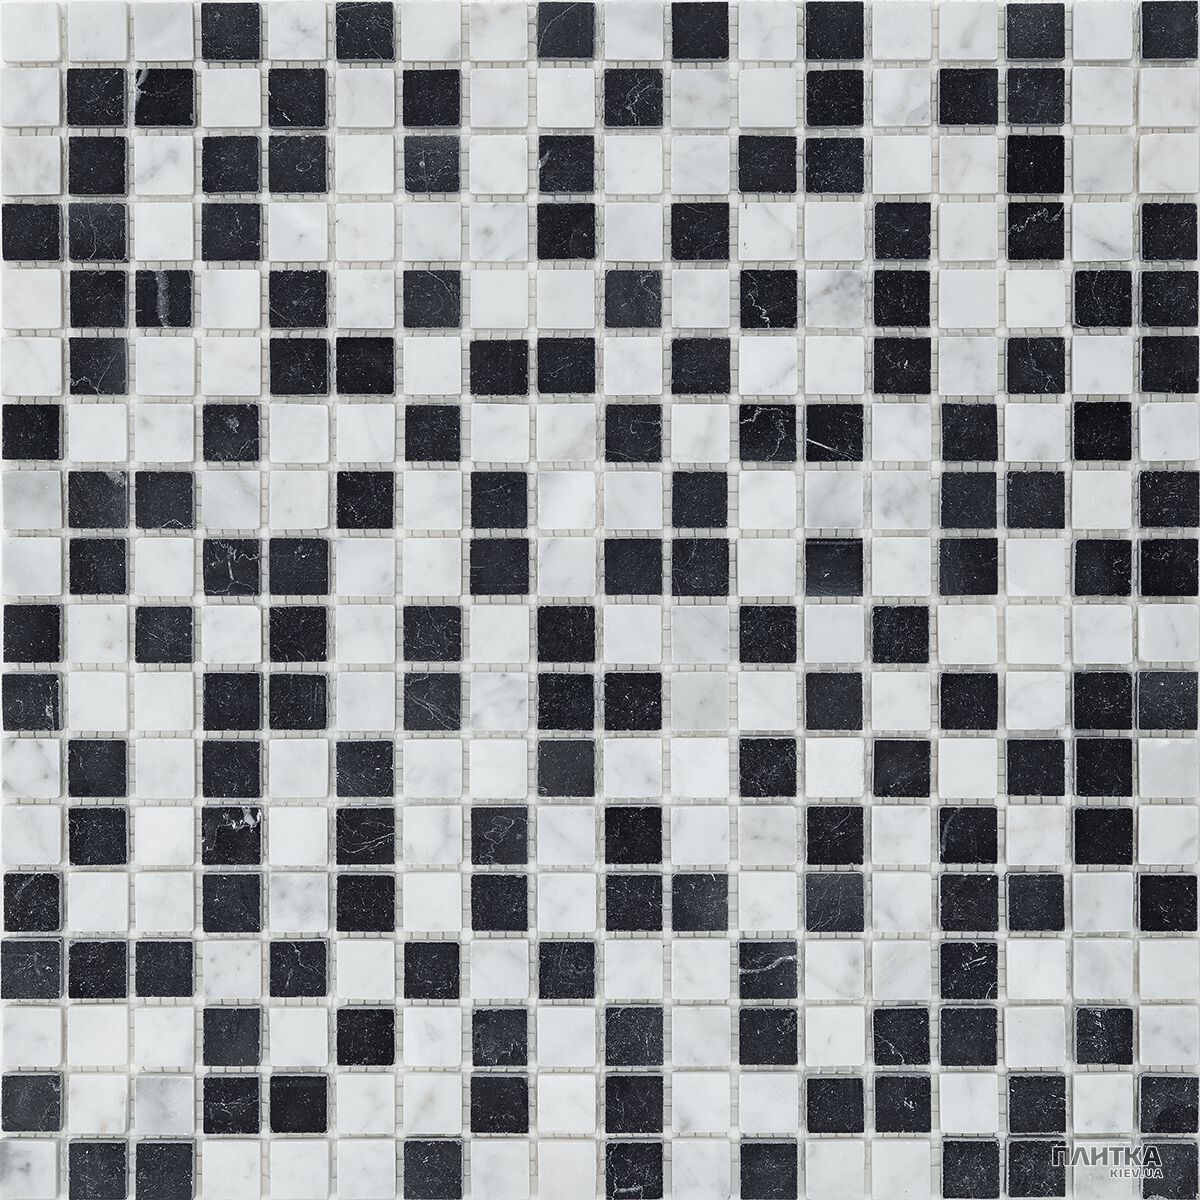 Мозаика Mozaico de Lux C-MOS C-MOS BIANCO CARRARA+NERO MARQUINA POL белый,черный